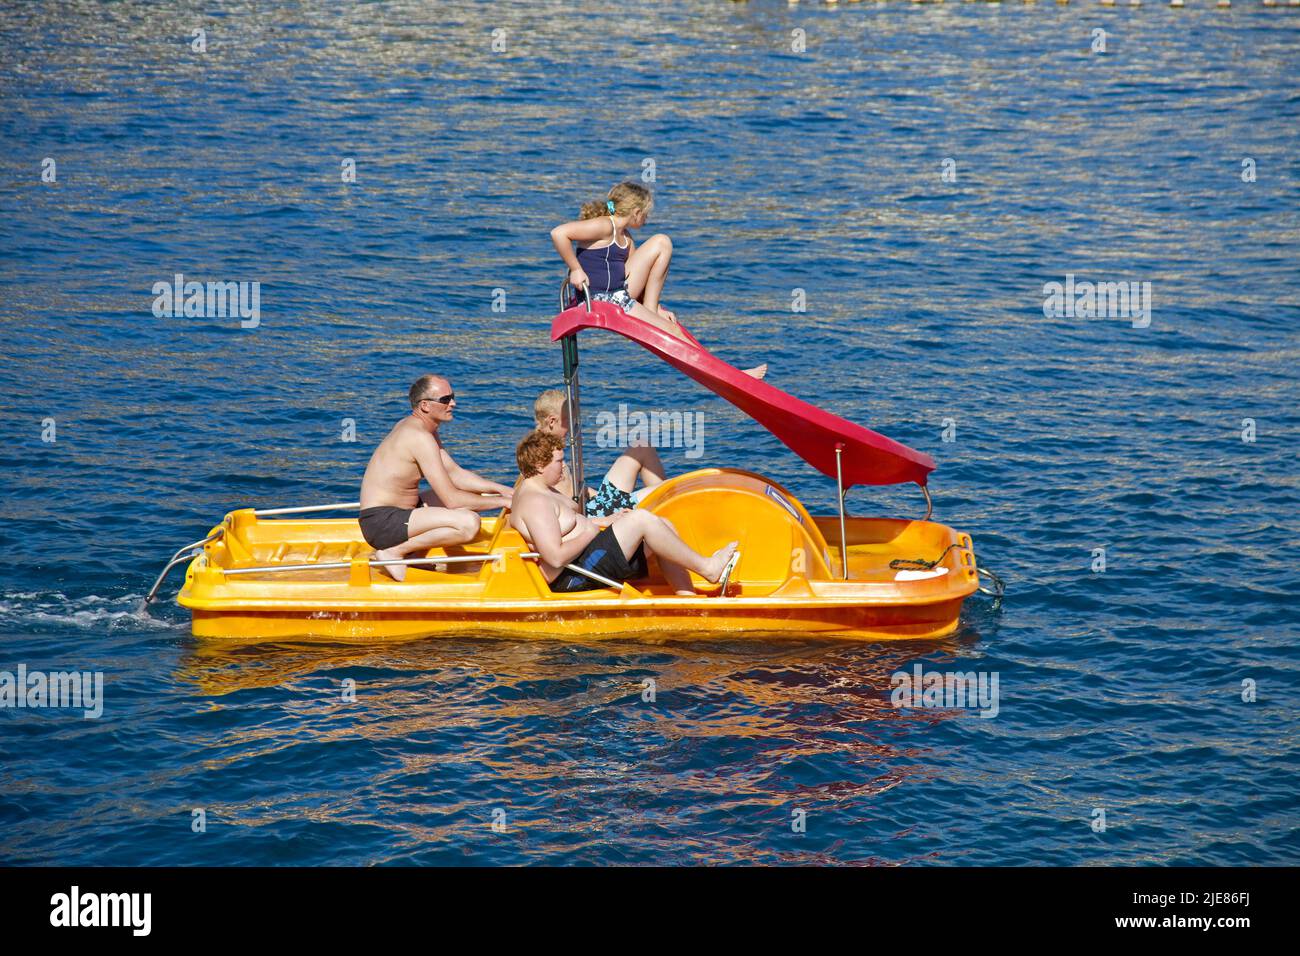 Touristen auf einem Tretboot in der Hafeneinfahrt von Puerto de Mogan, Gran Canaria, Kanarische Inseln, Spanien, Europa | Tourists on a pedal boat at Stock Photo